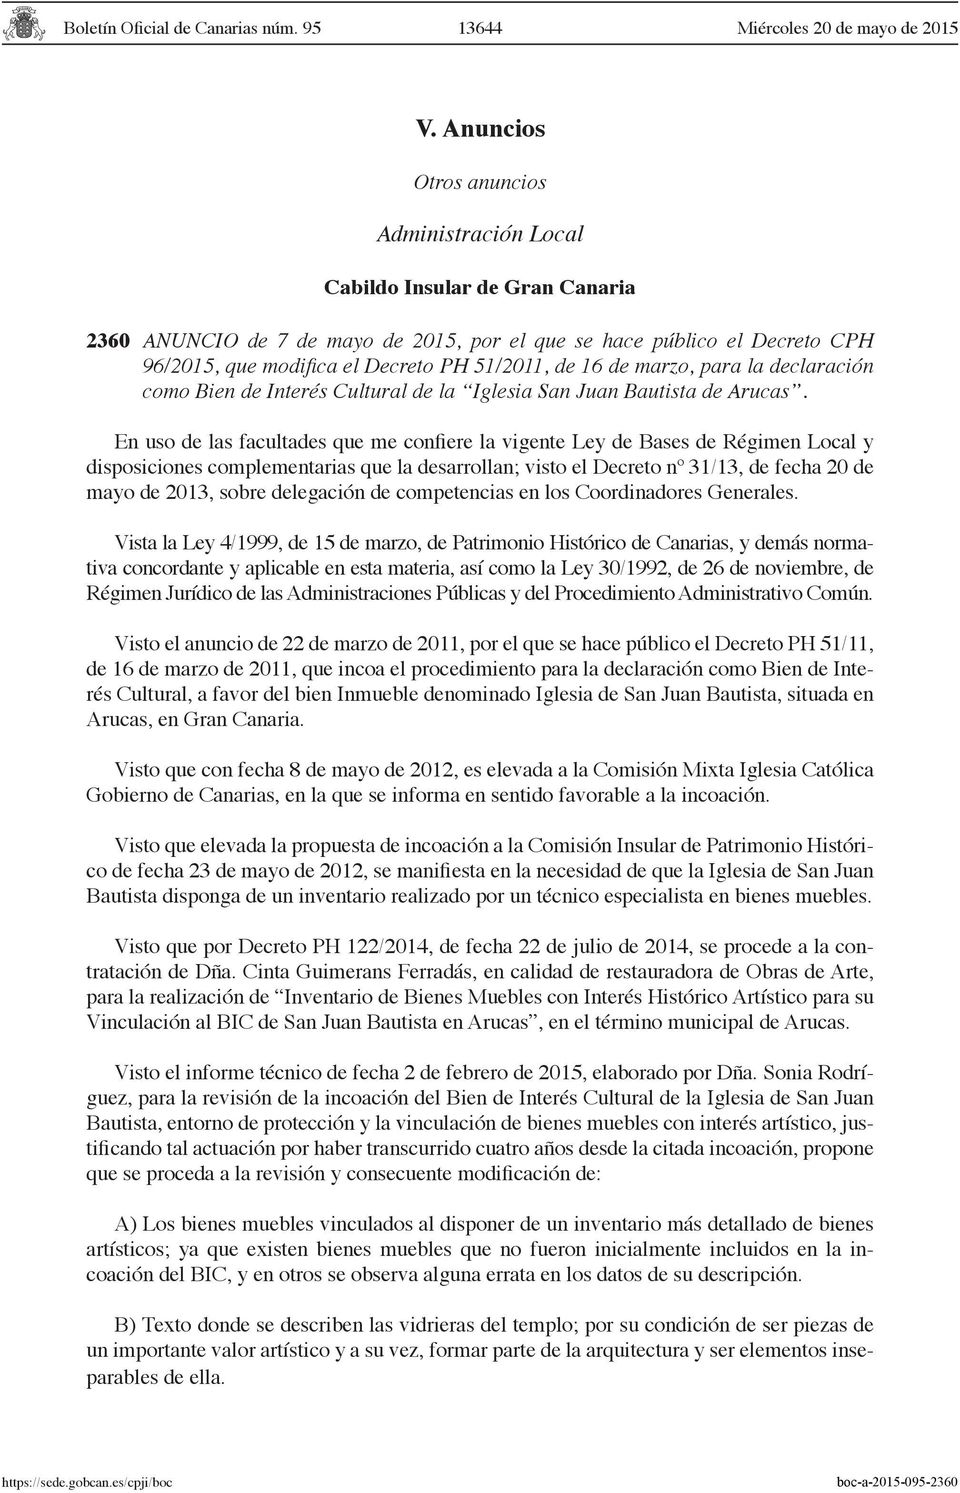 de 16 de marzo, para la declaración como Bien de Interés Cultural de la Iglesia San Juan Bautista de Arucas.